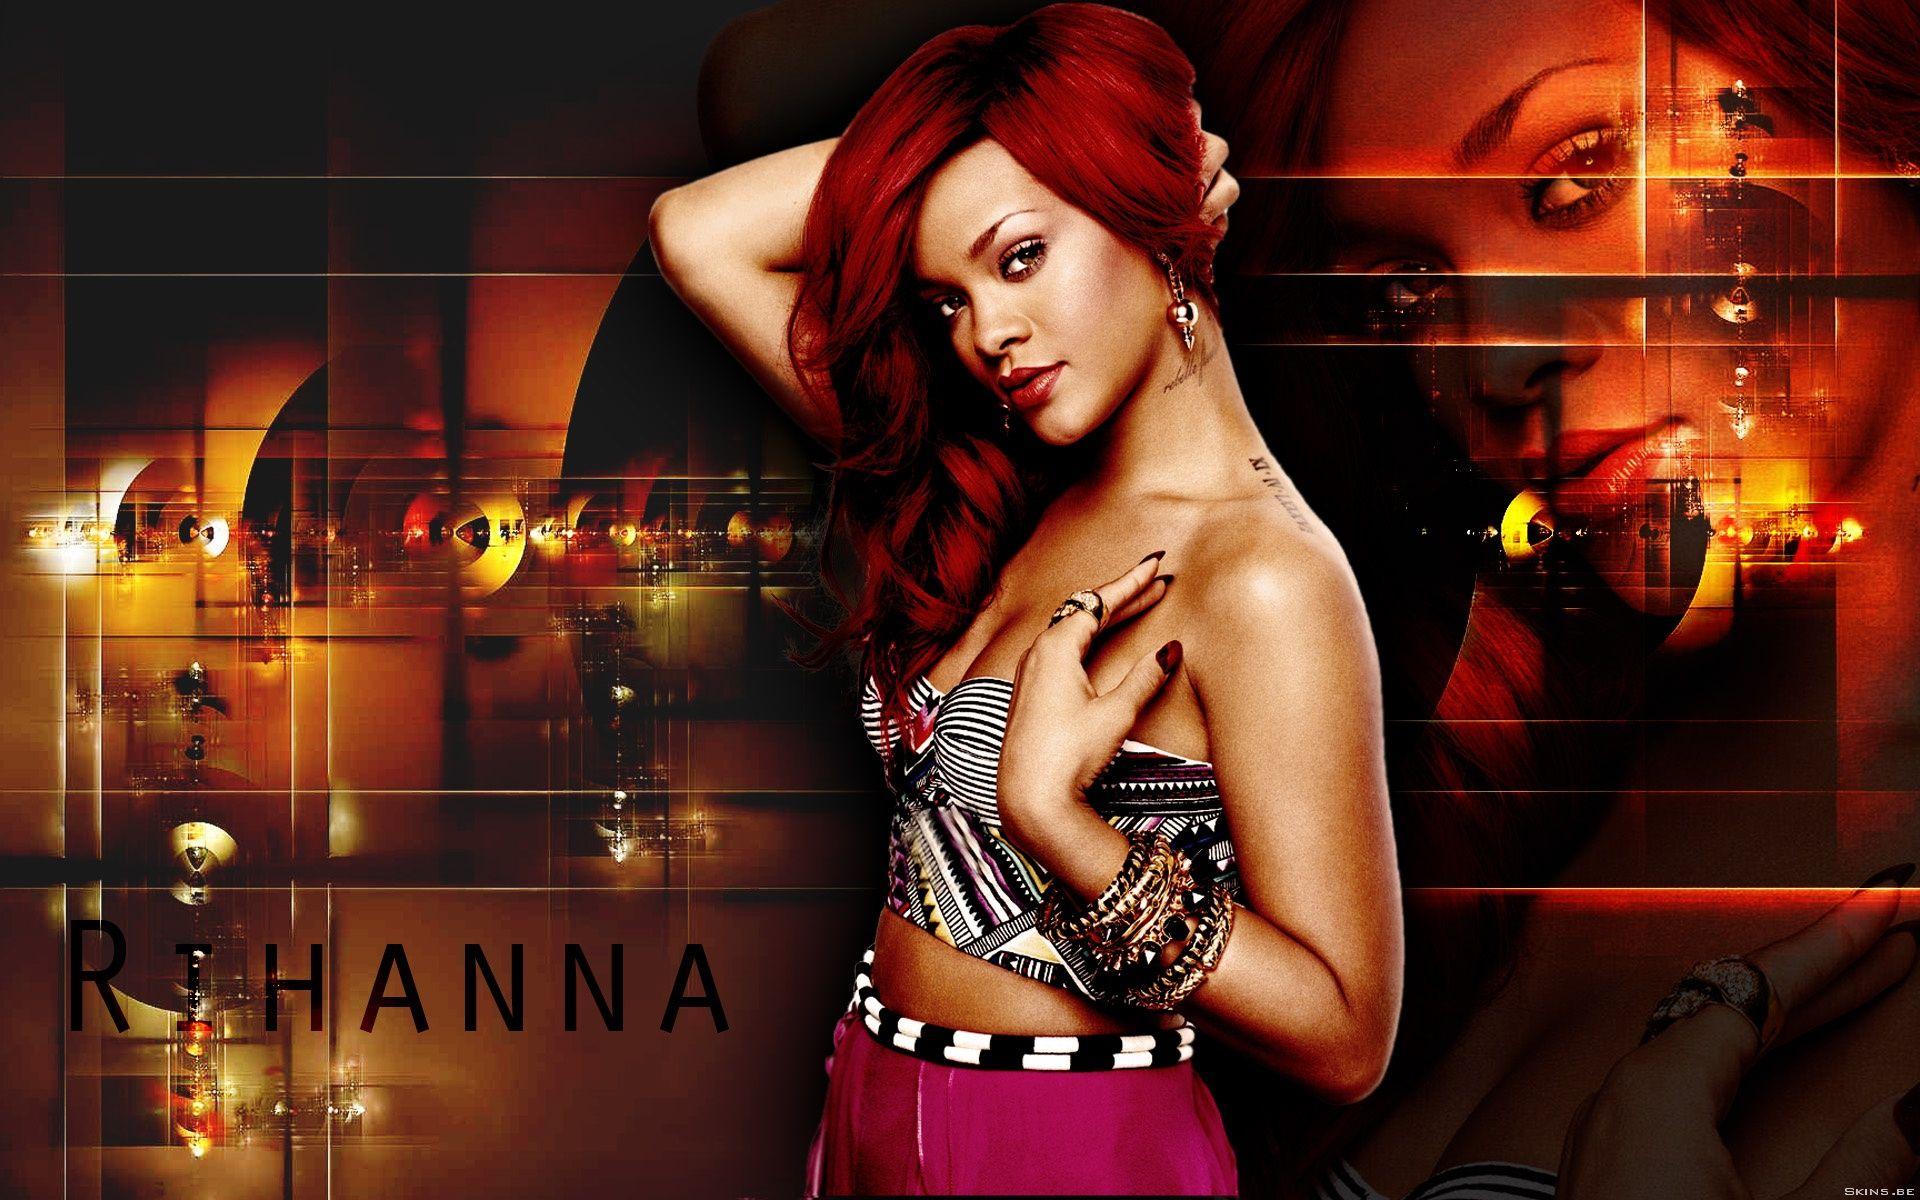 Rihanna Wallpaper, 37 Rihanna High Resolution Wallpaper's